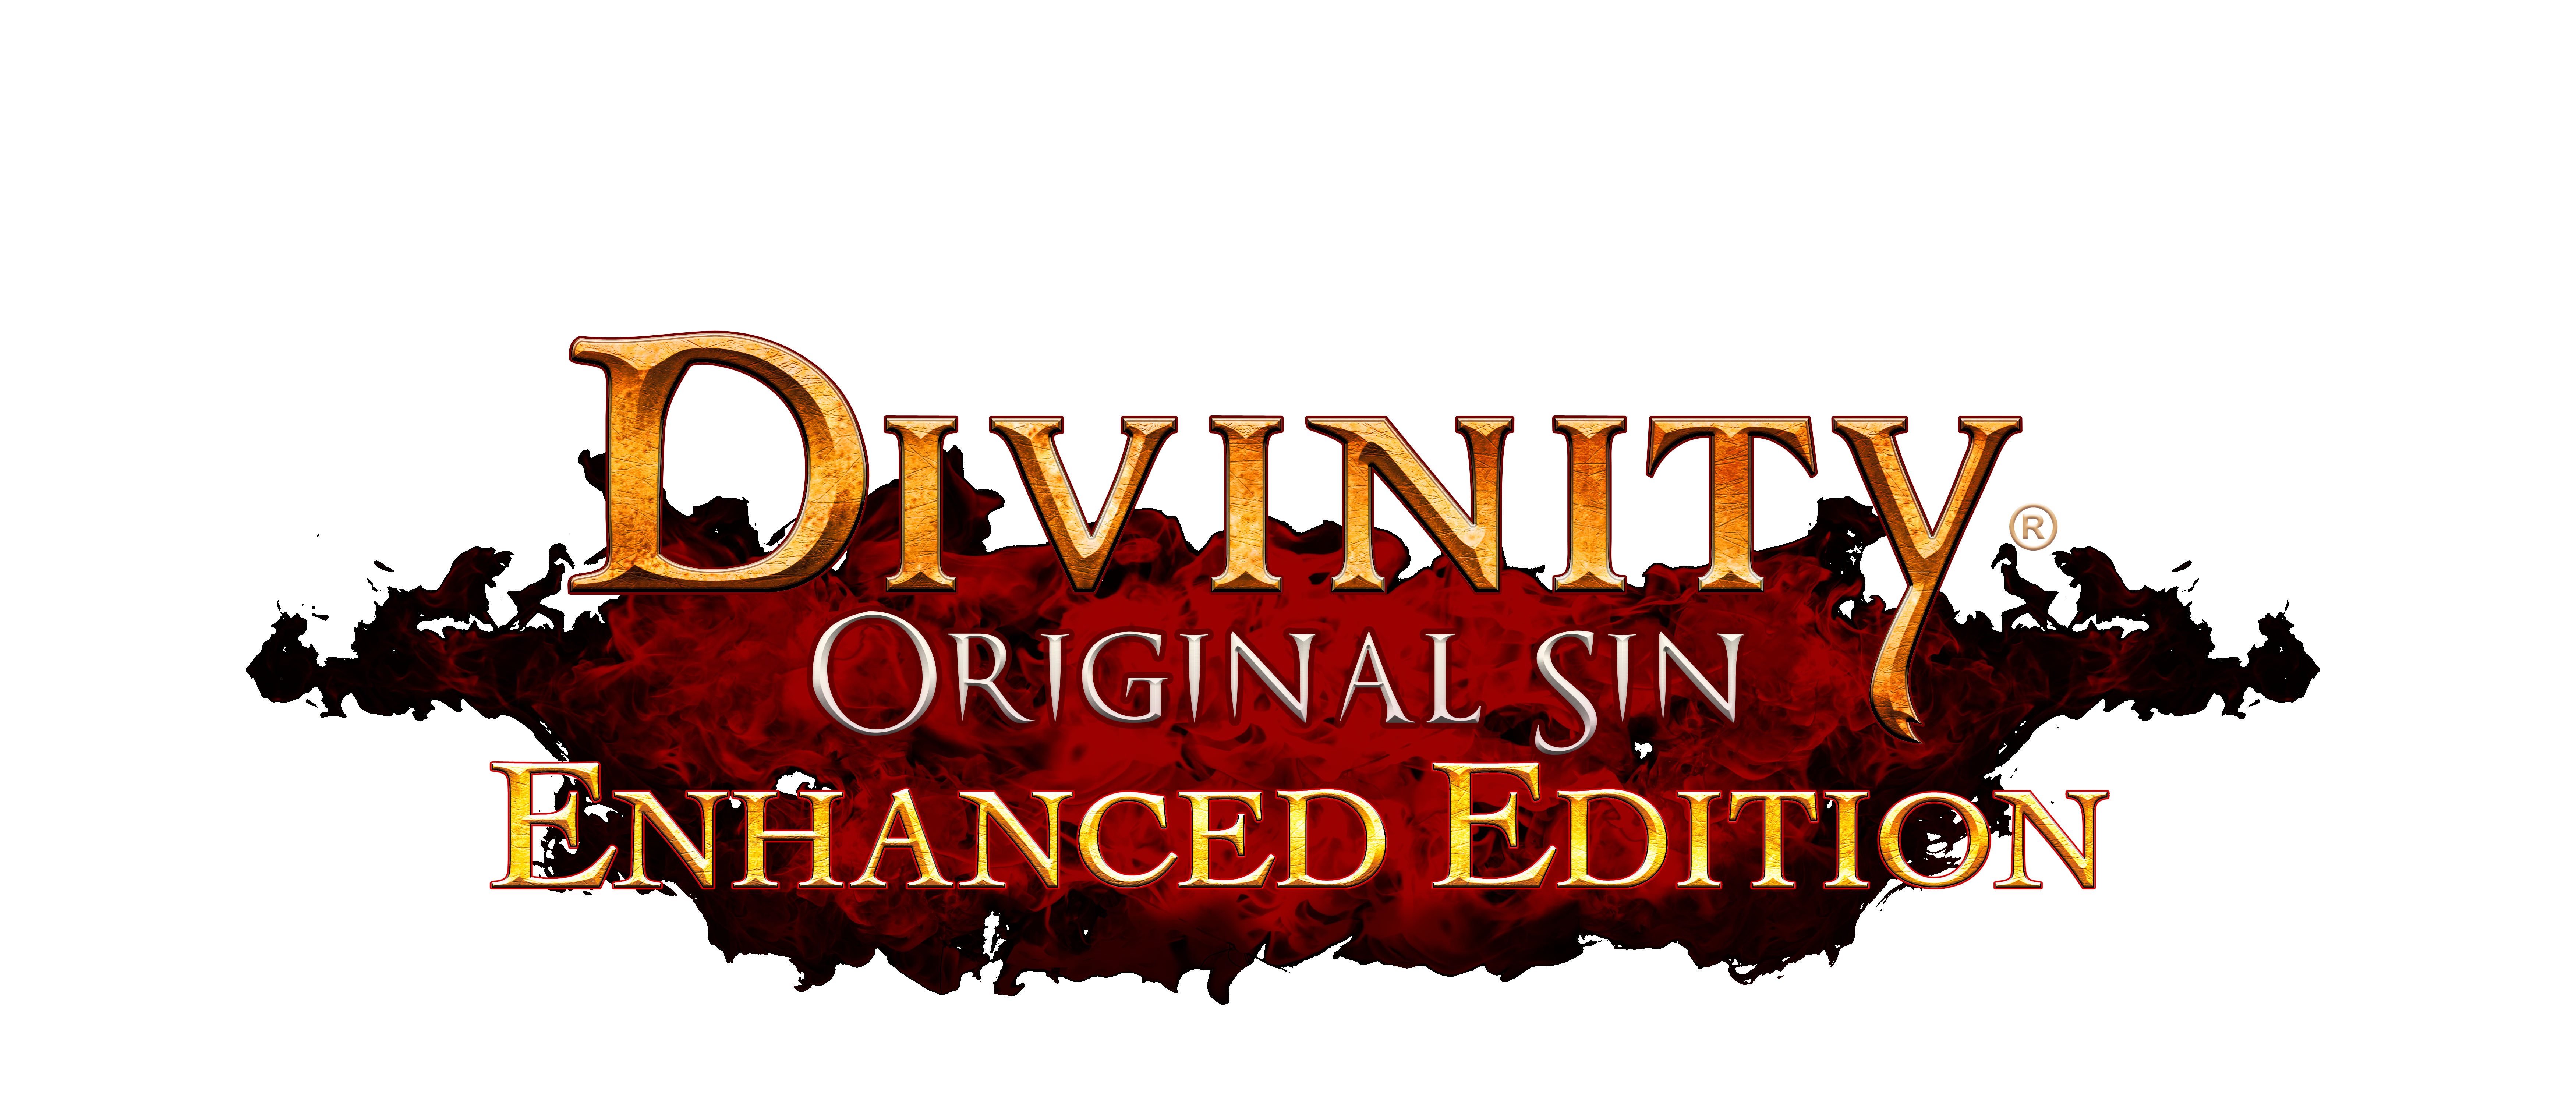 Divinity Original Sin Png Ima